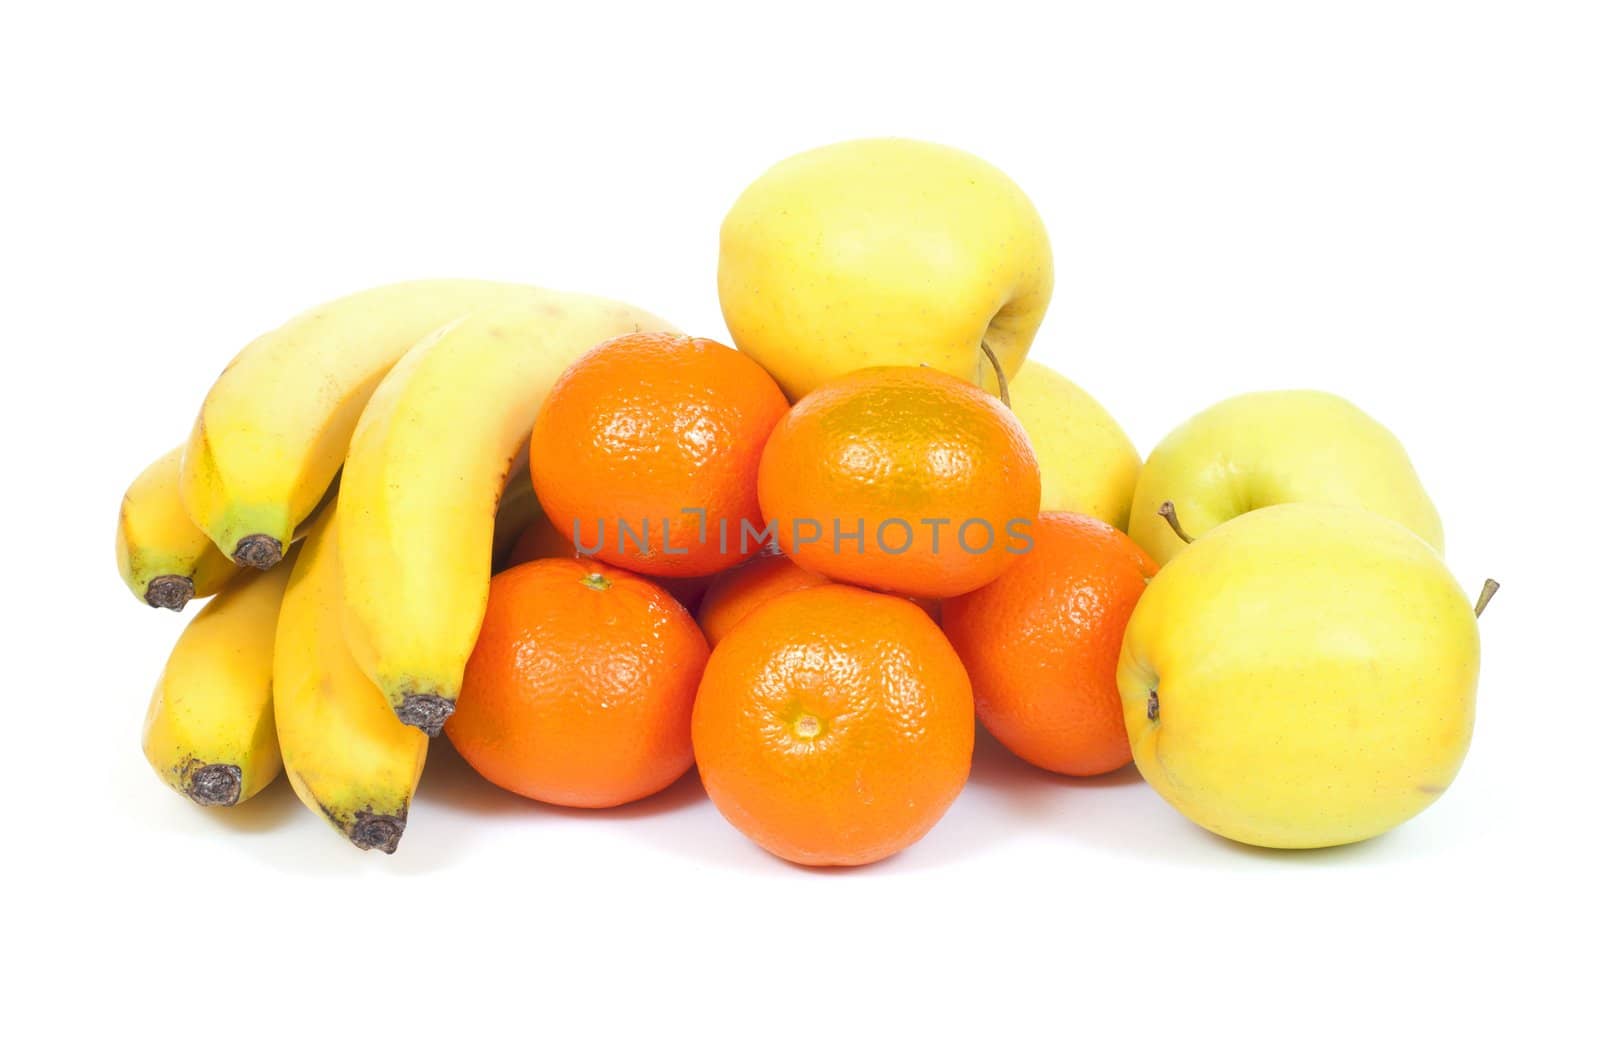 fruits on white background